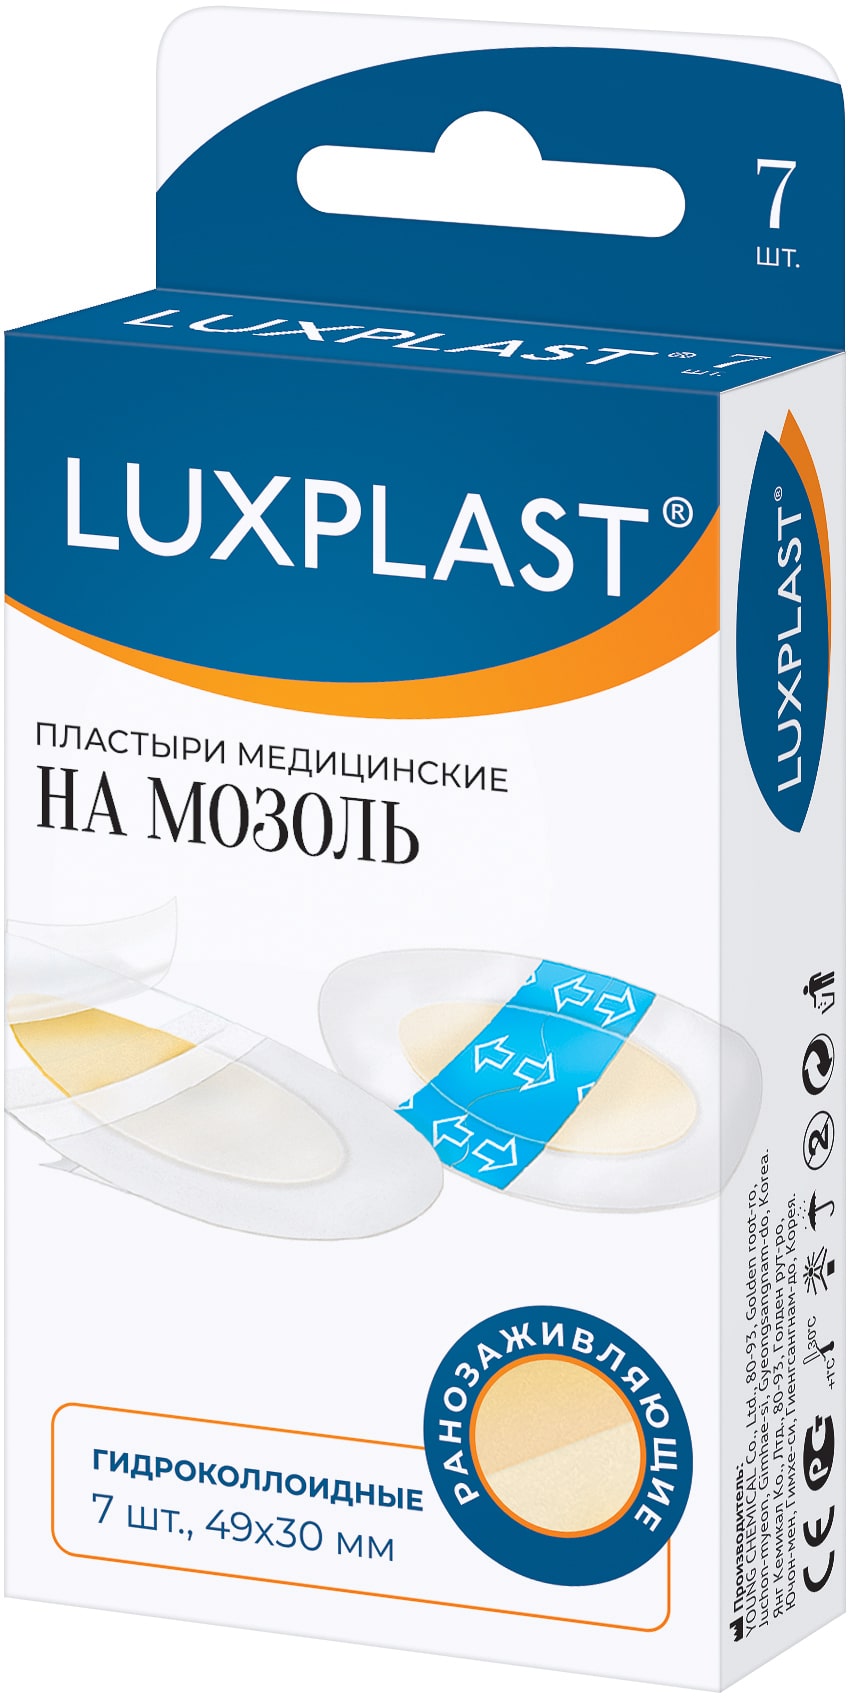 Luxplast Пластыри медицинские гидроколлоидные на мозоль 49х30 мм, 7 шт (Luxplast, Пластырь)